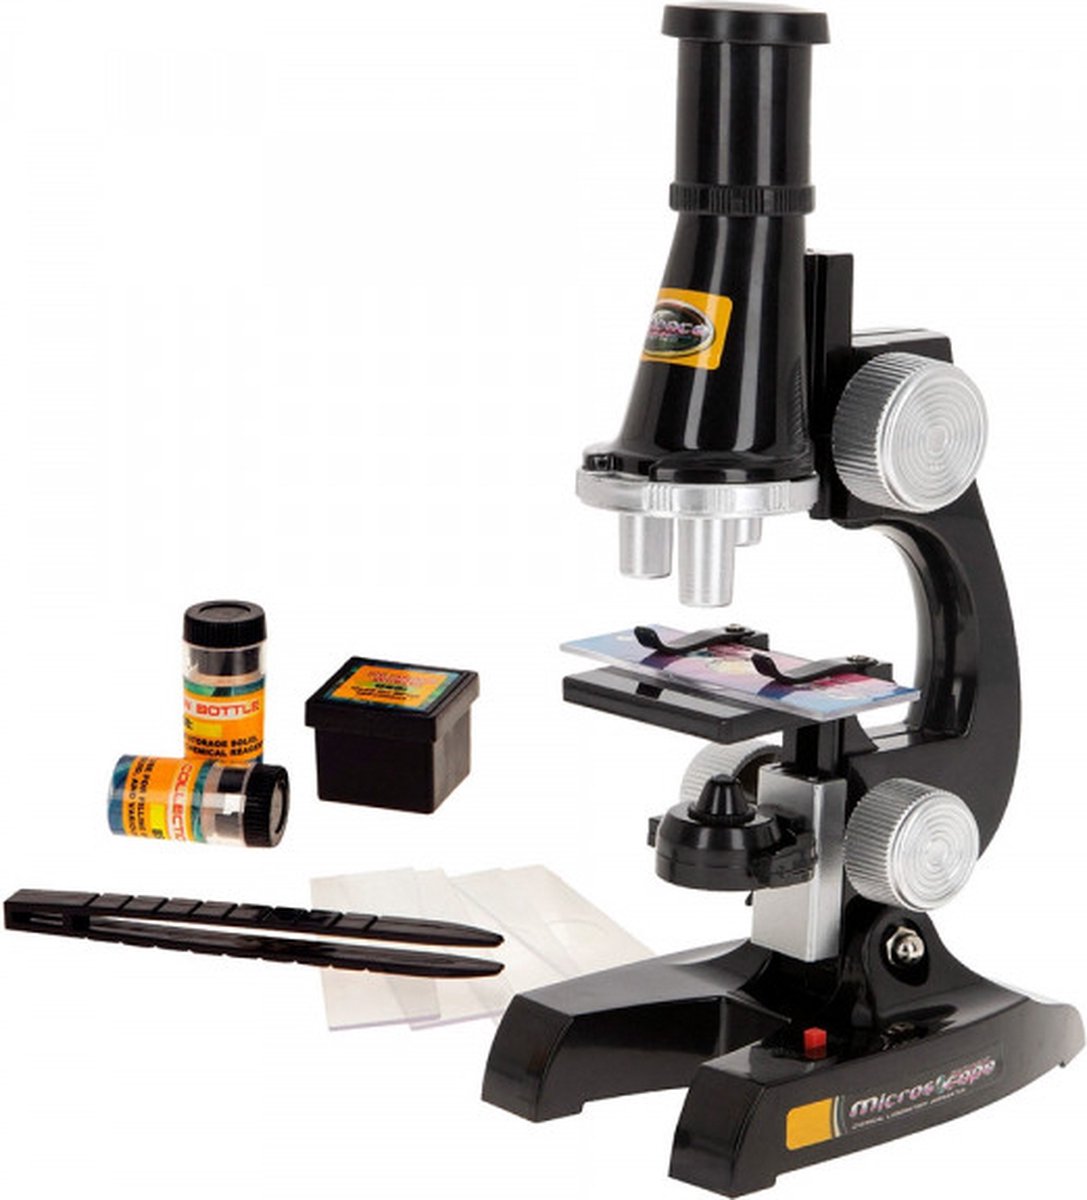 Kinder microscoop met licht 450X - vanaf 8 jaar - 23x19cm